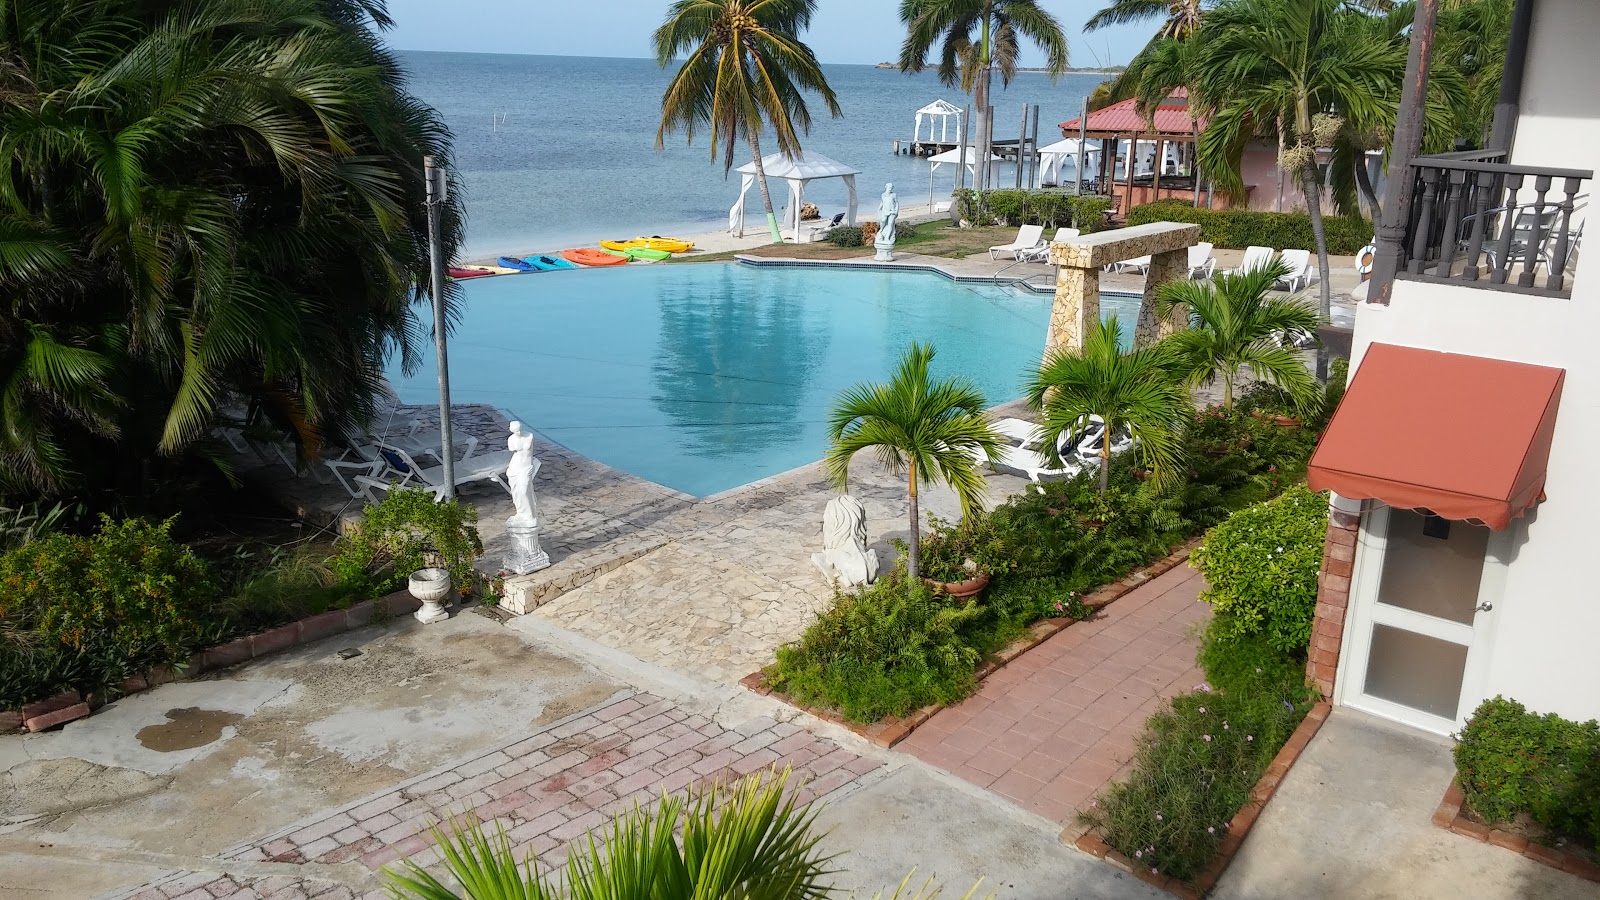 Φωτογραφία του Playa Salinas μερικά μέρη του ξενοδοχείου